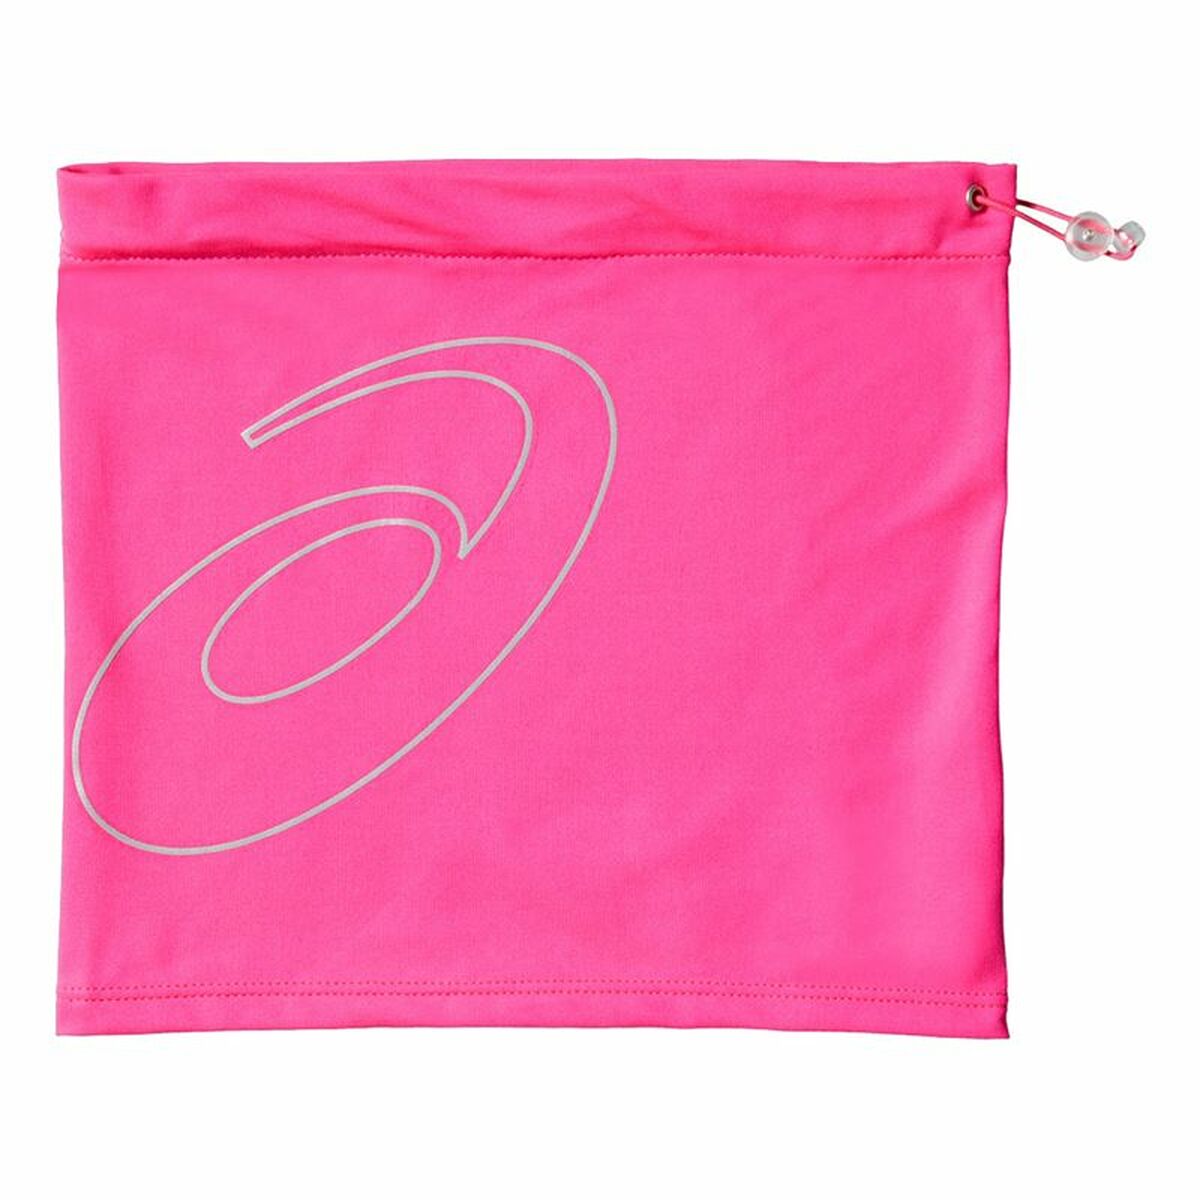 Sports bag  trainning Asics logo tube Pink One size